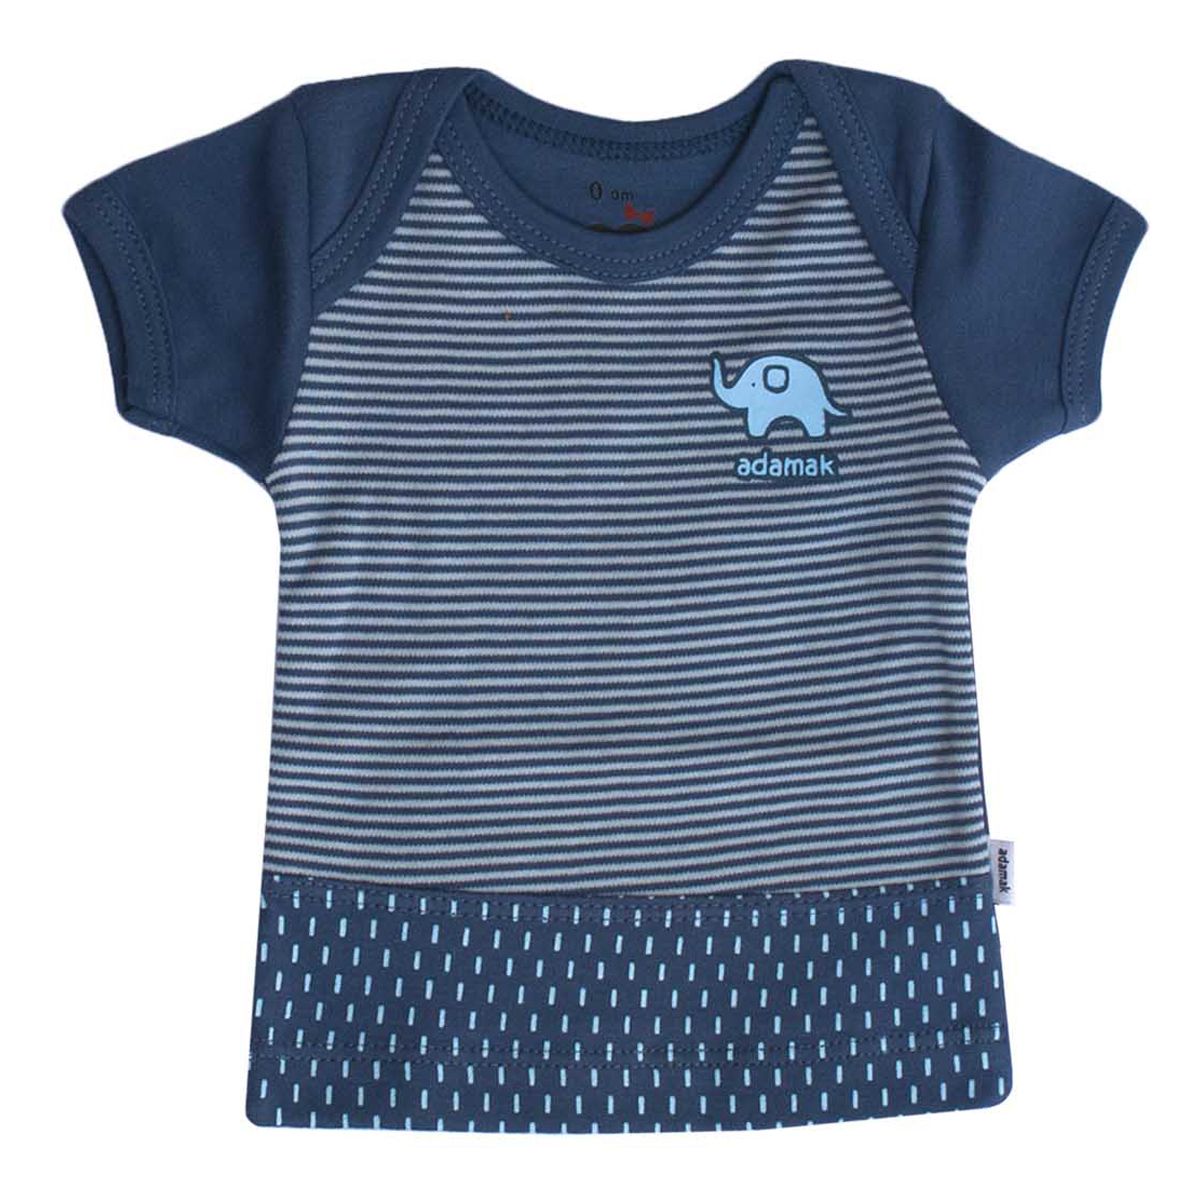  تی شرت آستین کوتاه نوزادی آدمک طرح فیل کد 01 -  - 1